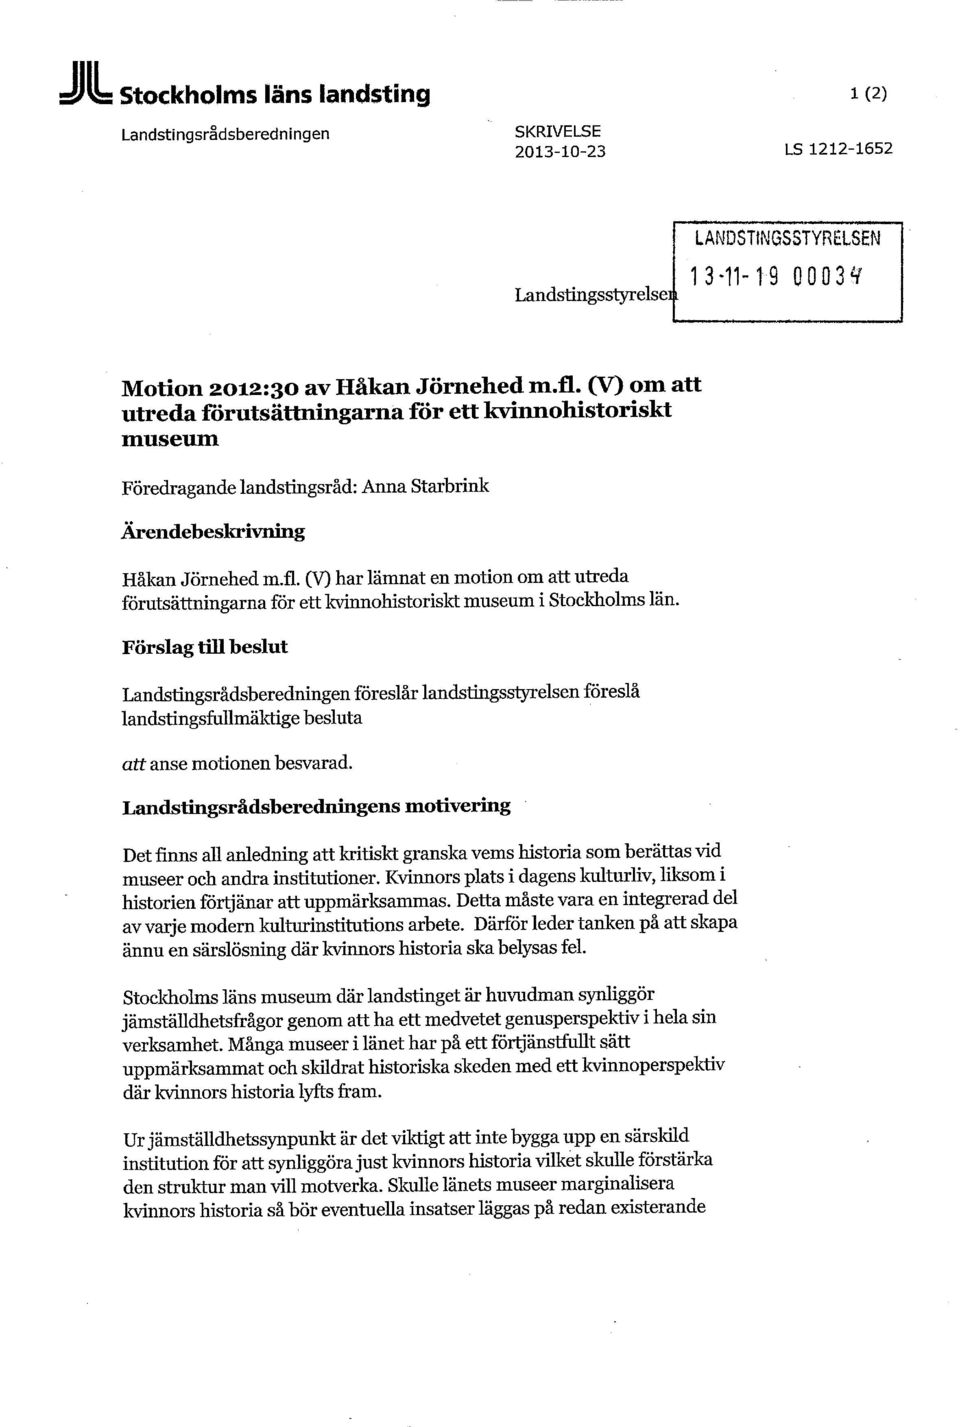 (V) har lämnat en motion om att utreda förutsättningarna för ett kvinnohistoriskt museum i Stockholms län.